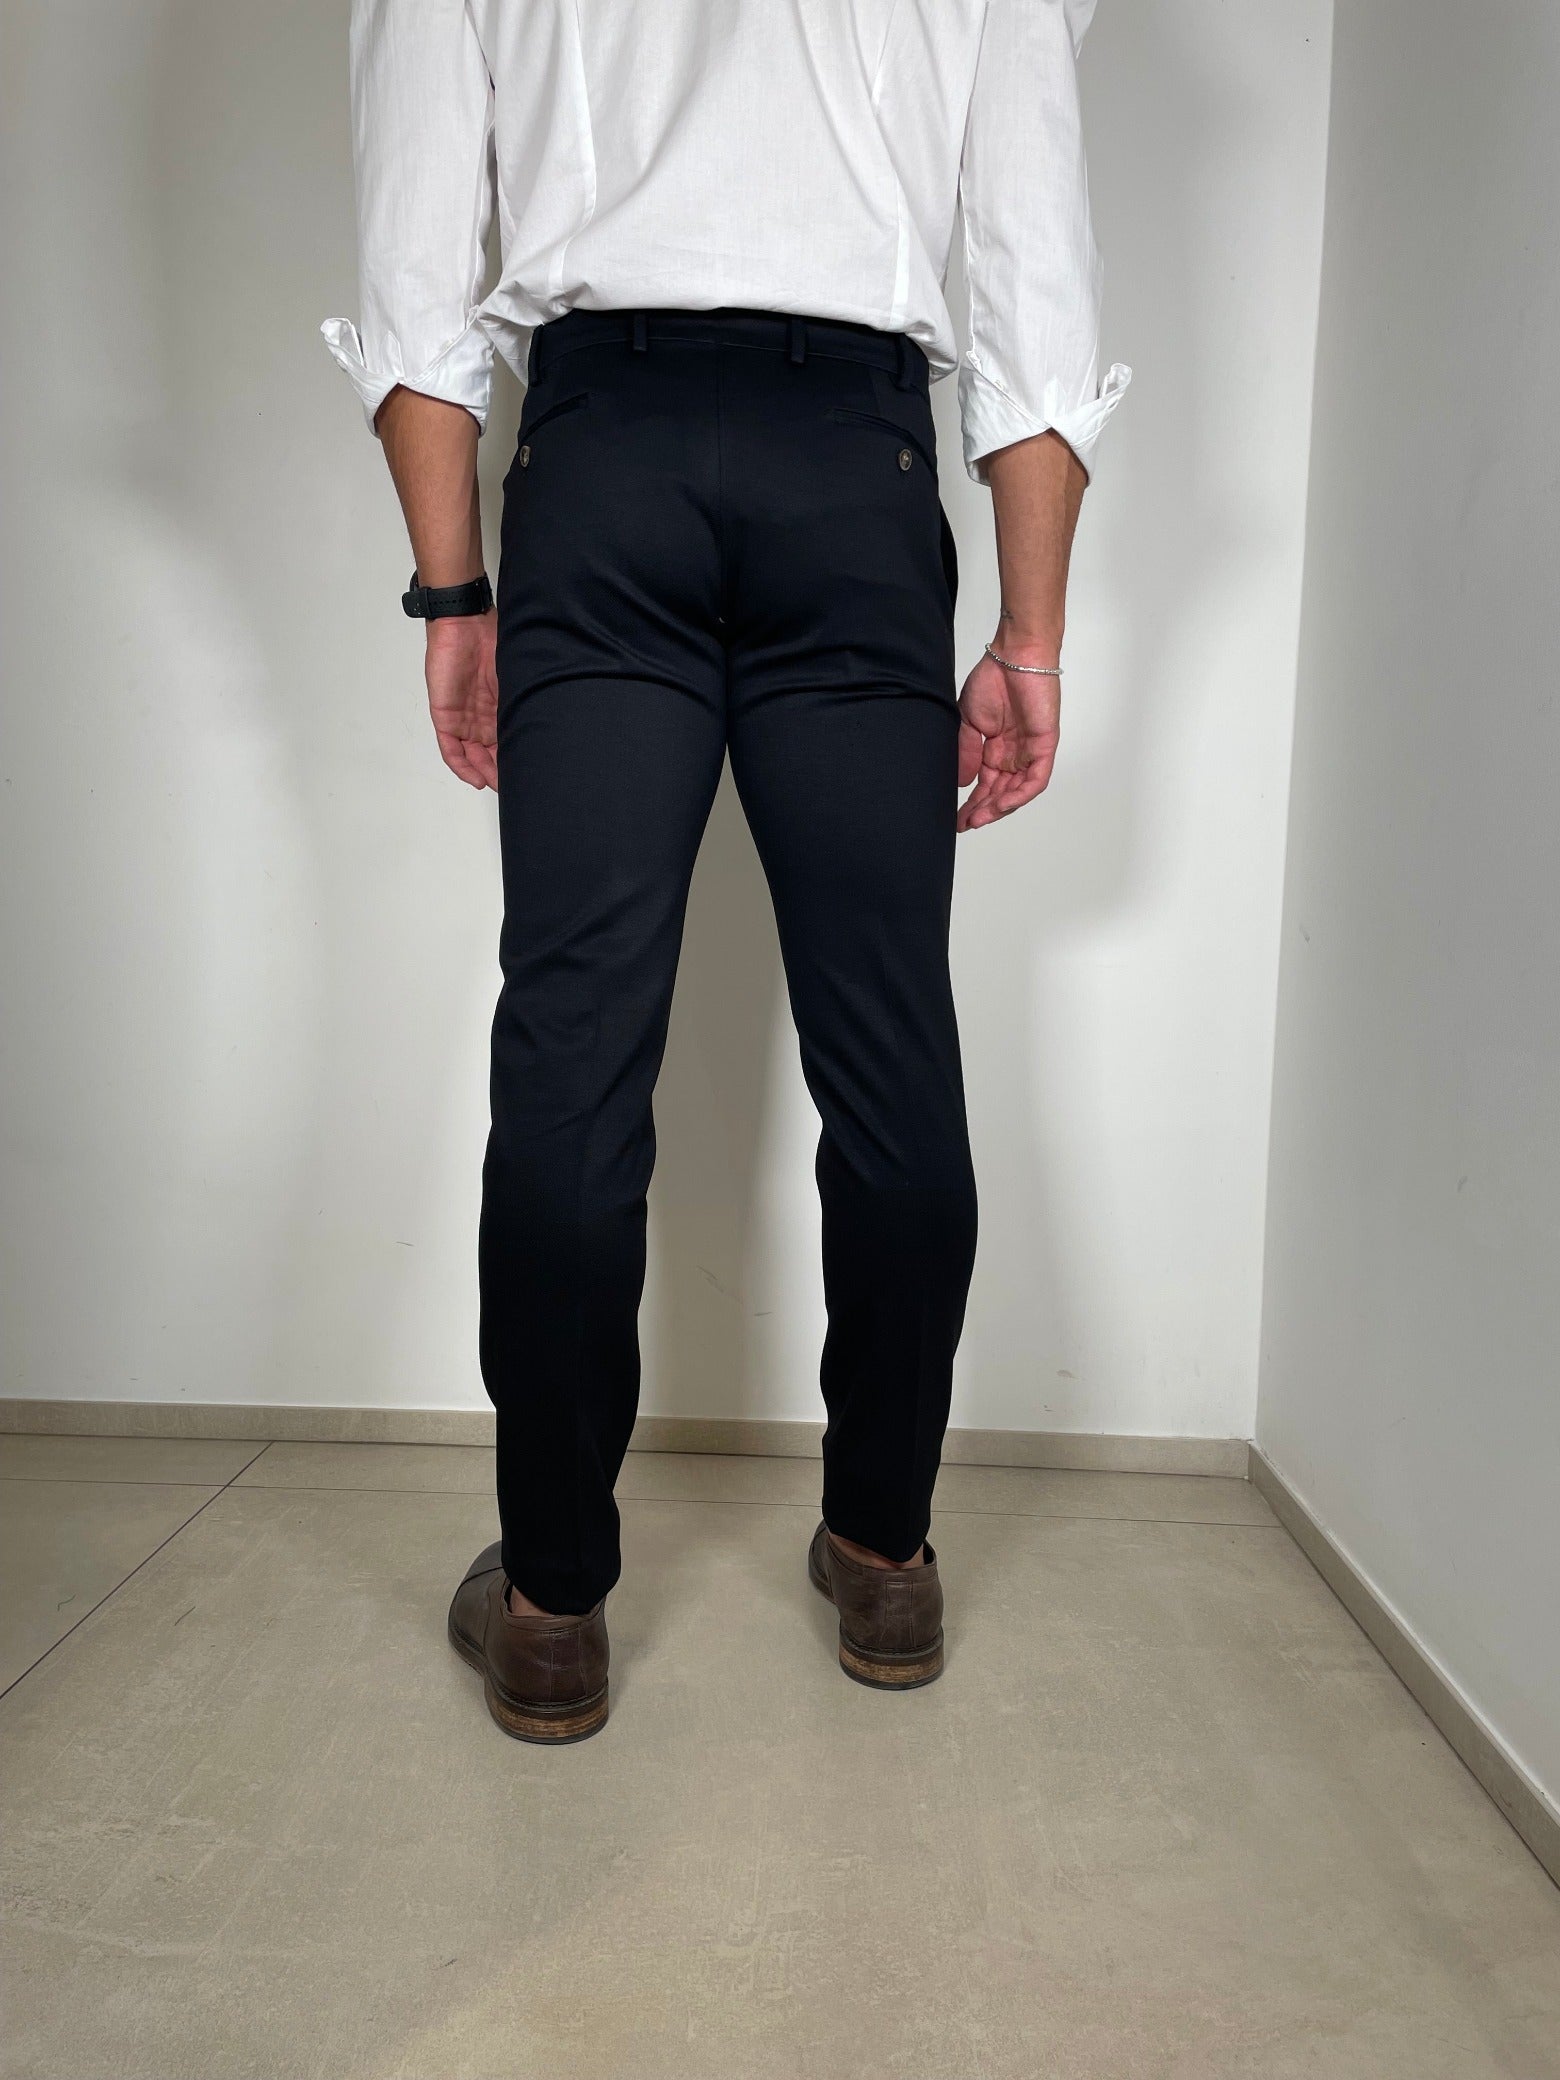 Tom Merritt Pantalone Modello 700/108